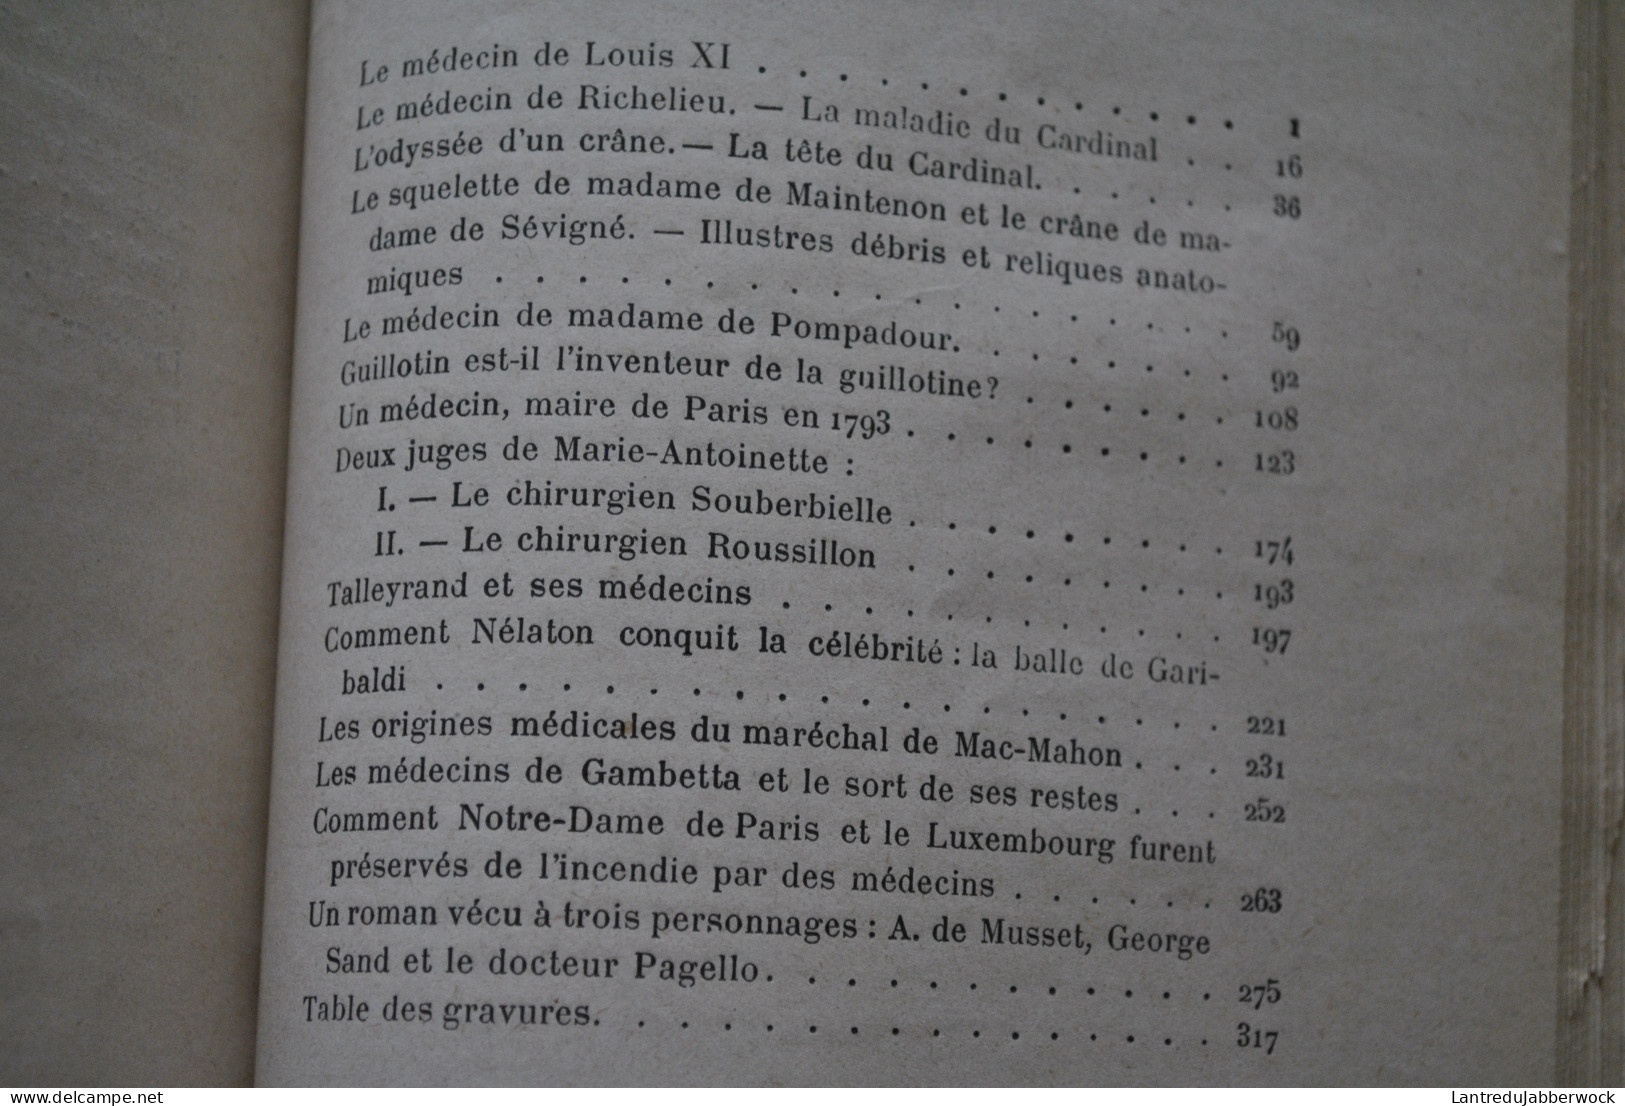 DOCTEUR CABANES CABINET SECRET DE L'HISTOIRE Volumes 1 2 3 4 COMPLET (????) RELIURE CUIR liseré doré Albin Michel 1906